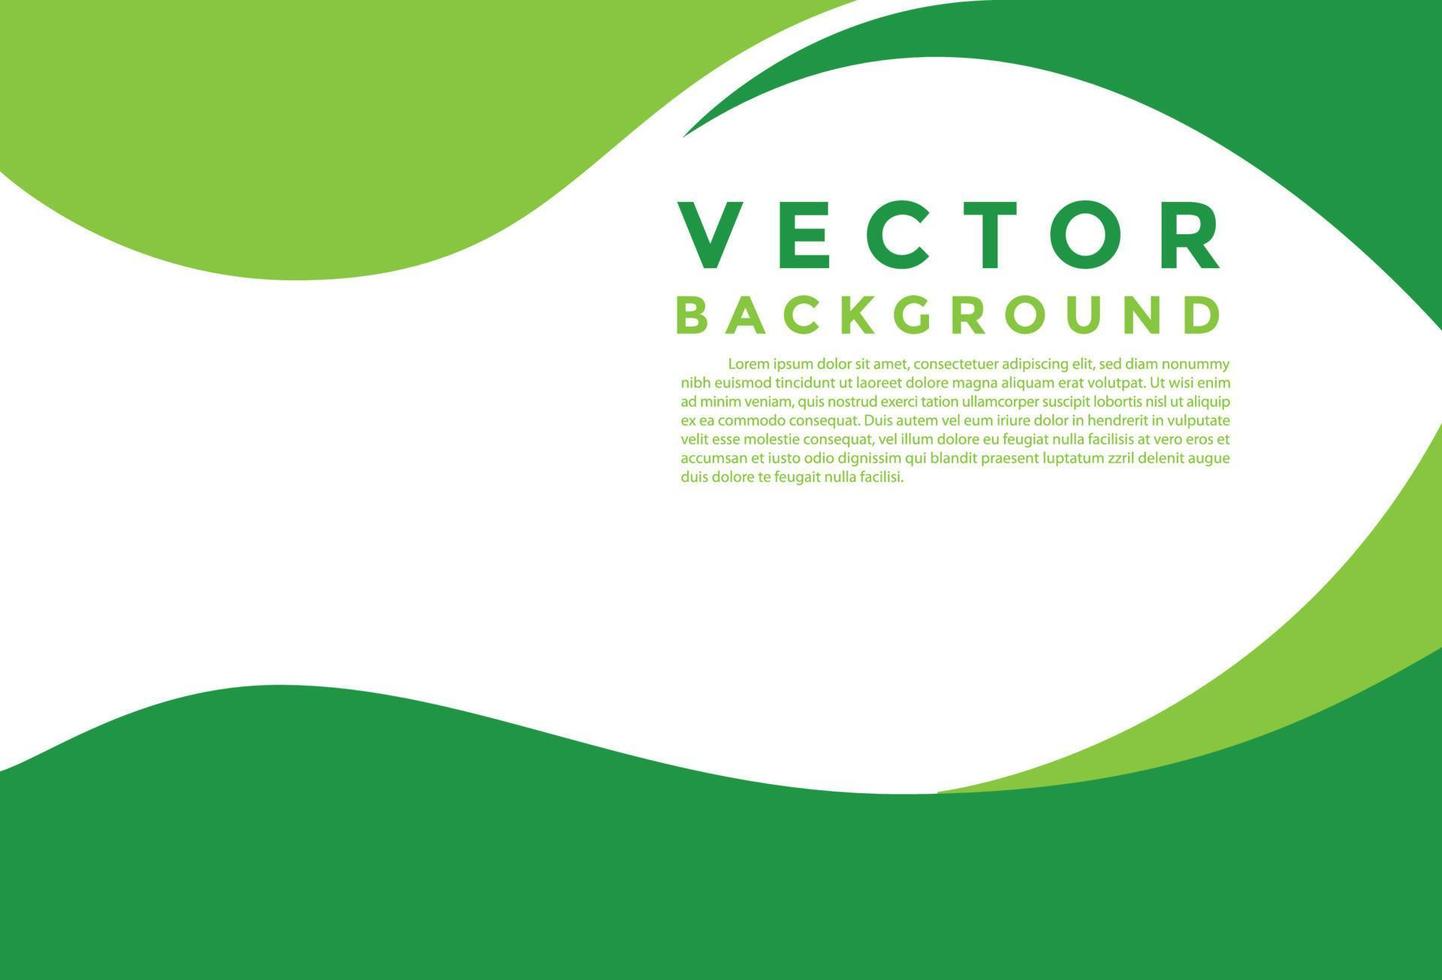 groene achtergrond vector illustratie verlichting effect afbeelding voor tekst en message board ontwerp infographic.